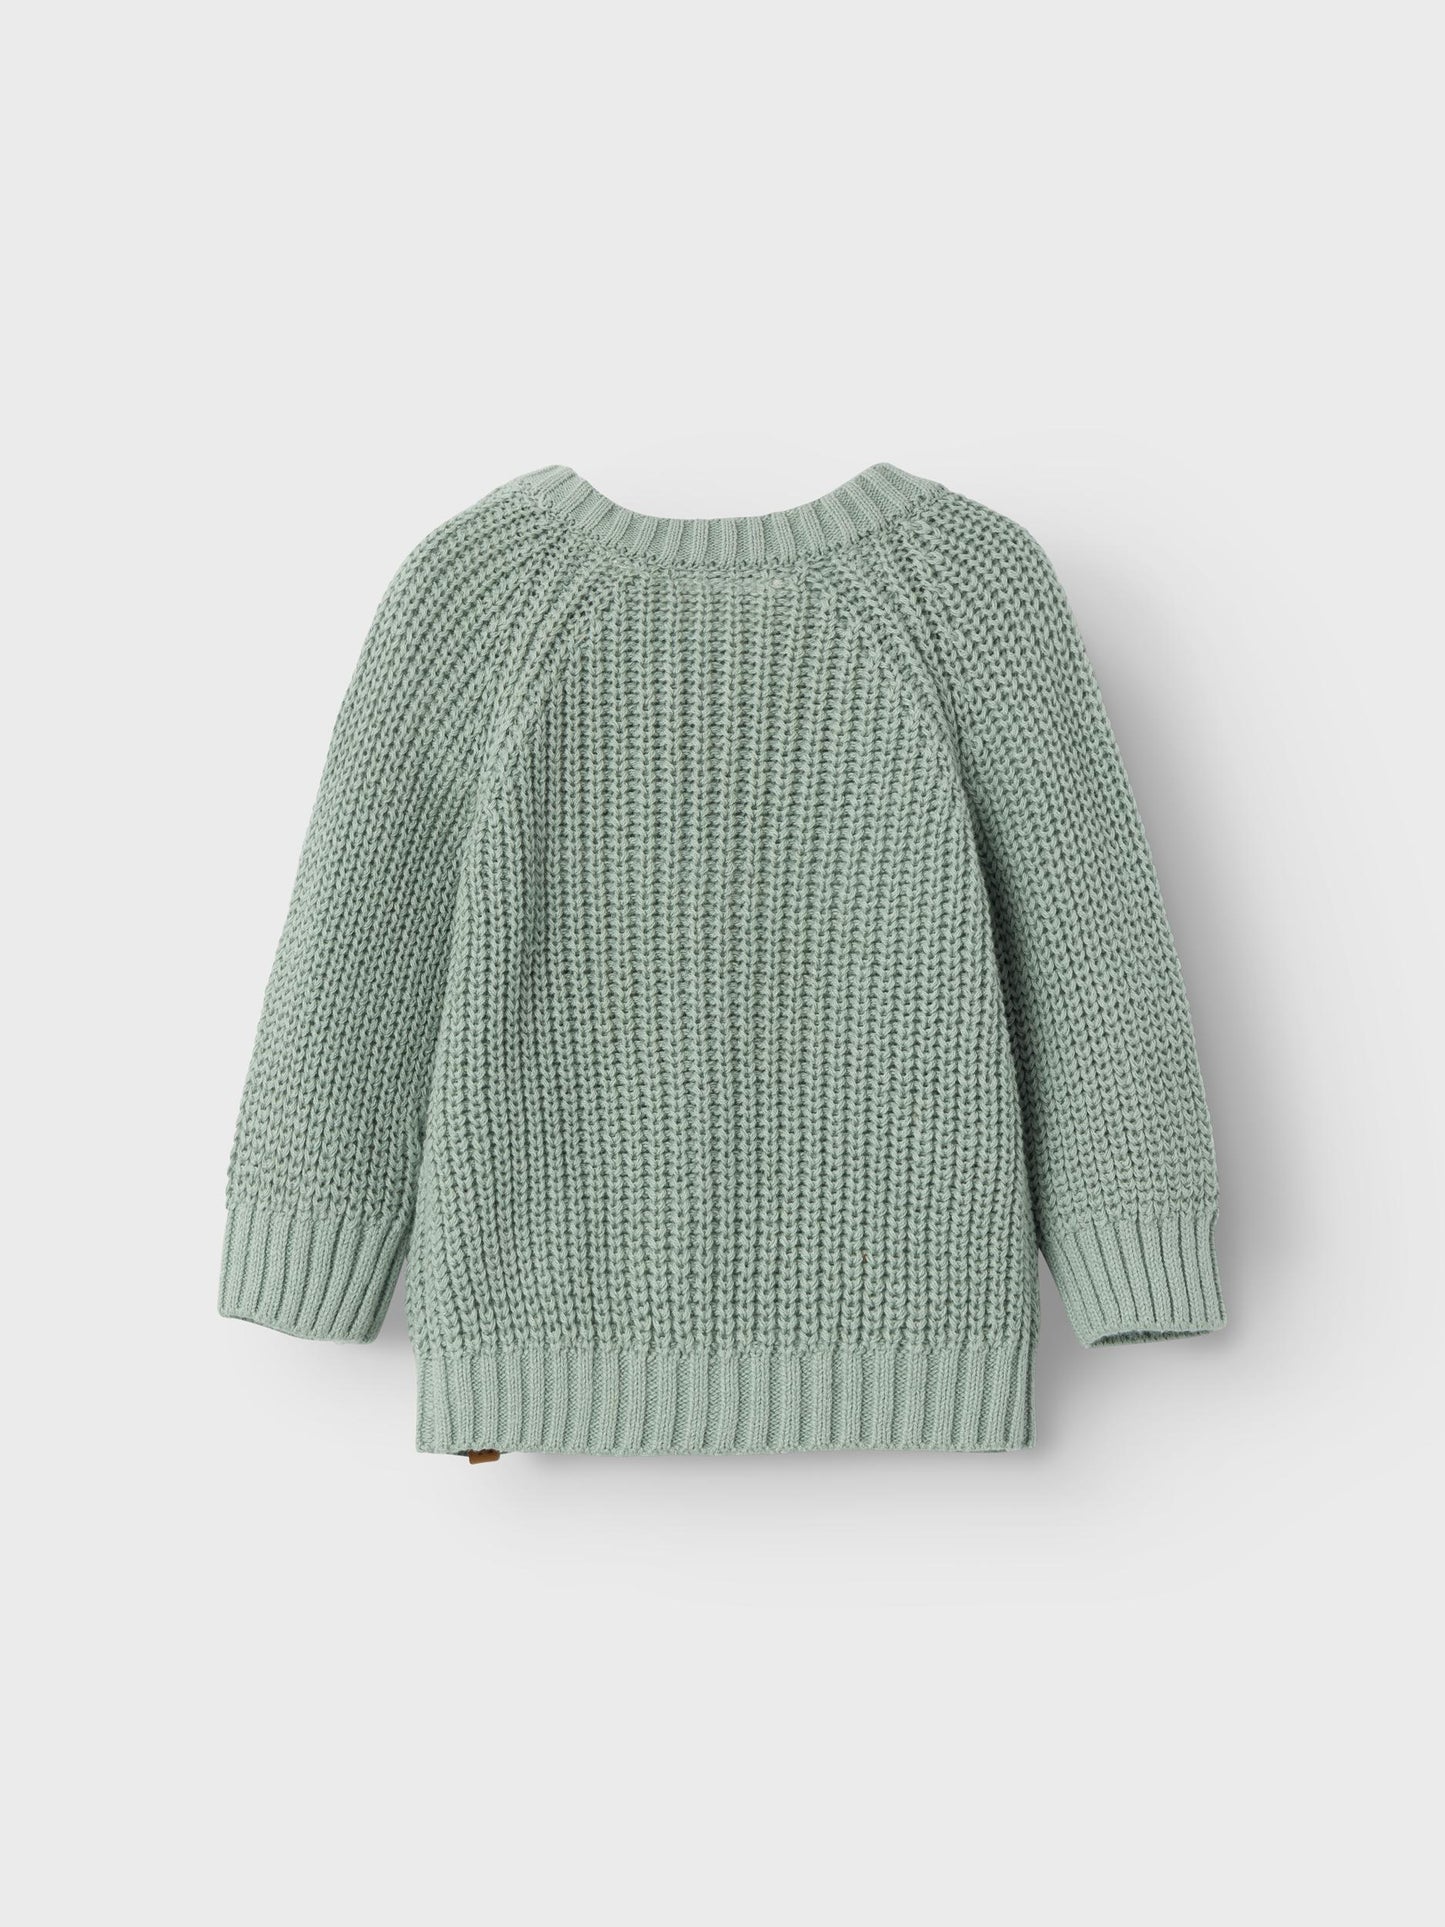 Lil atelier - knitted vest - Jadeite